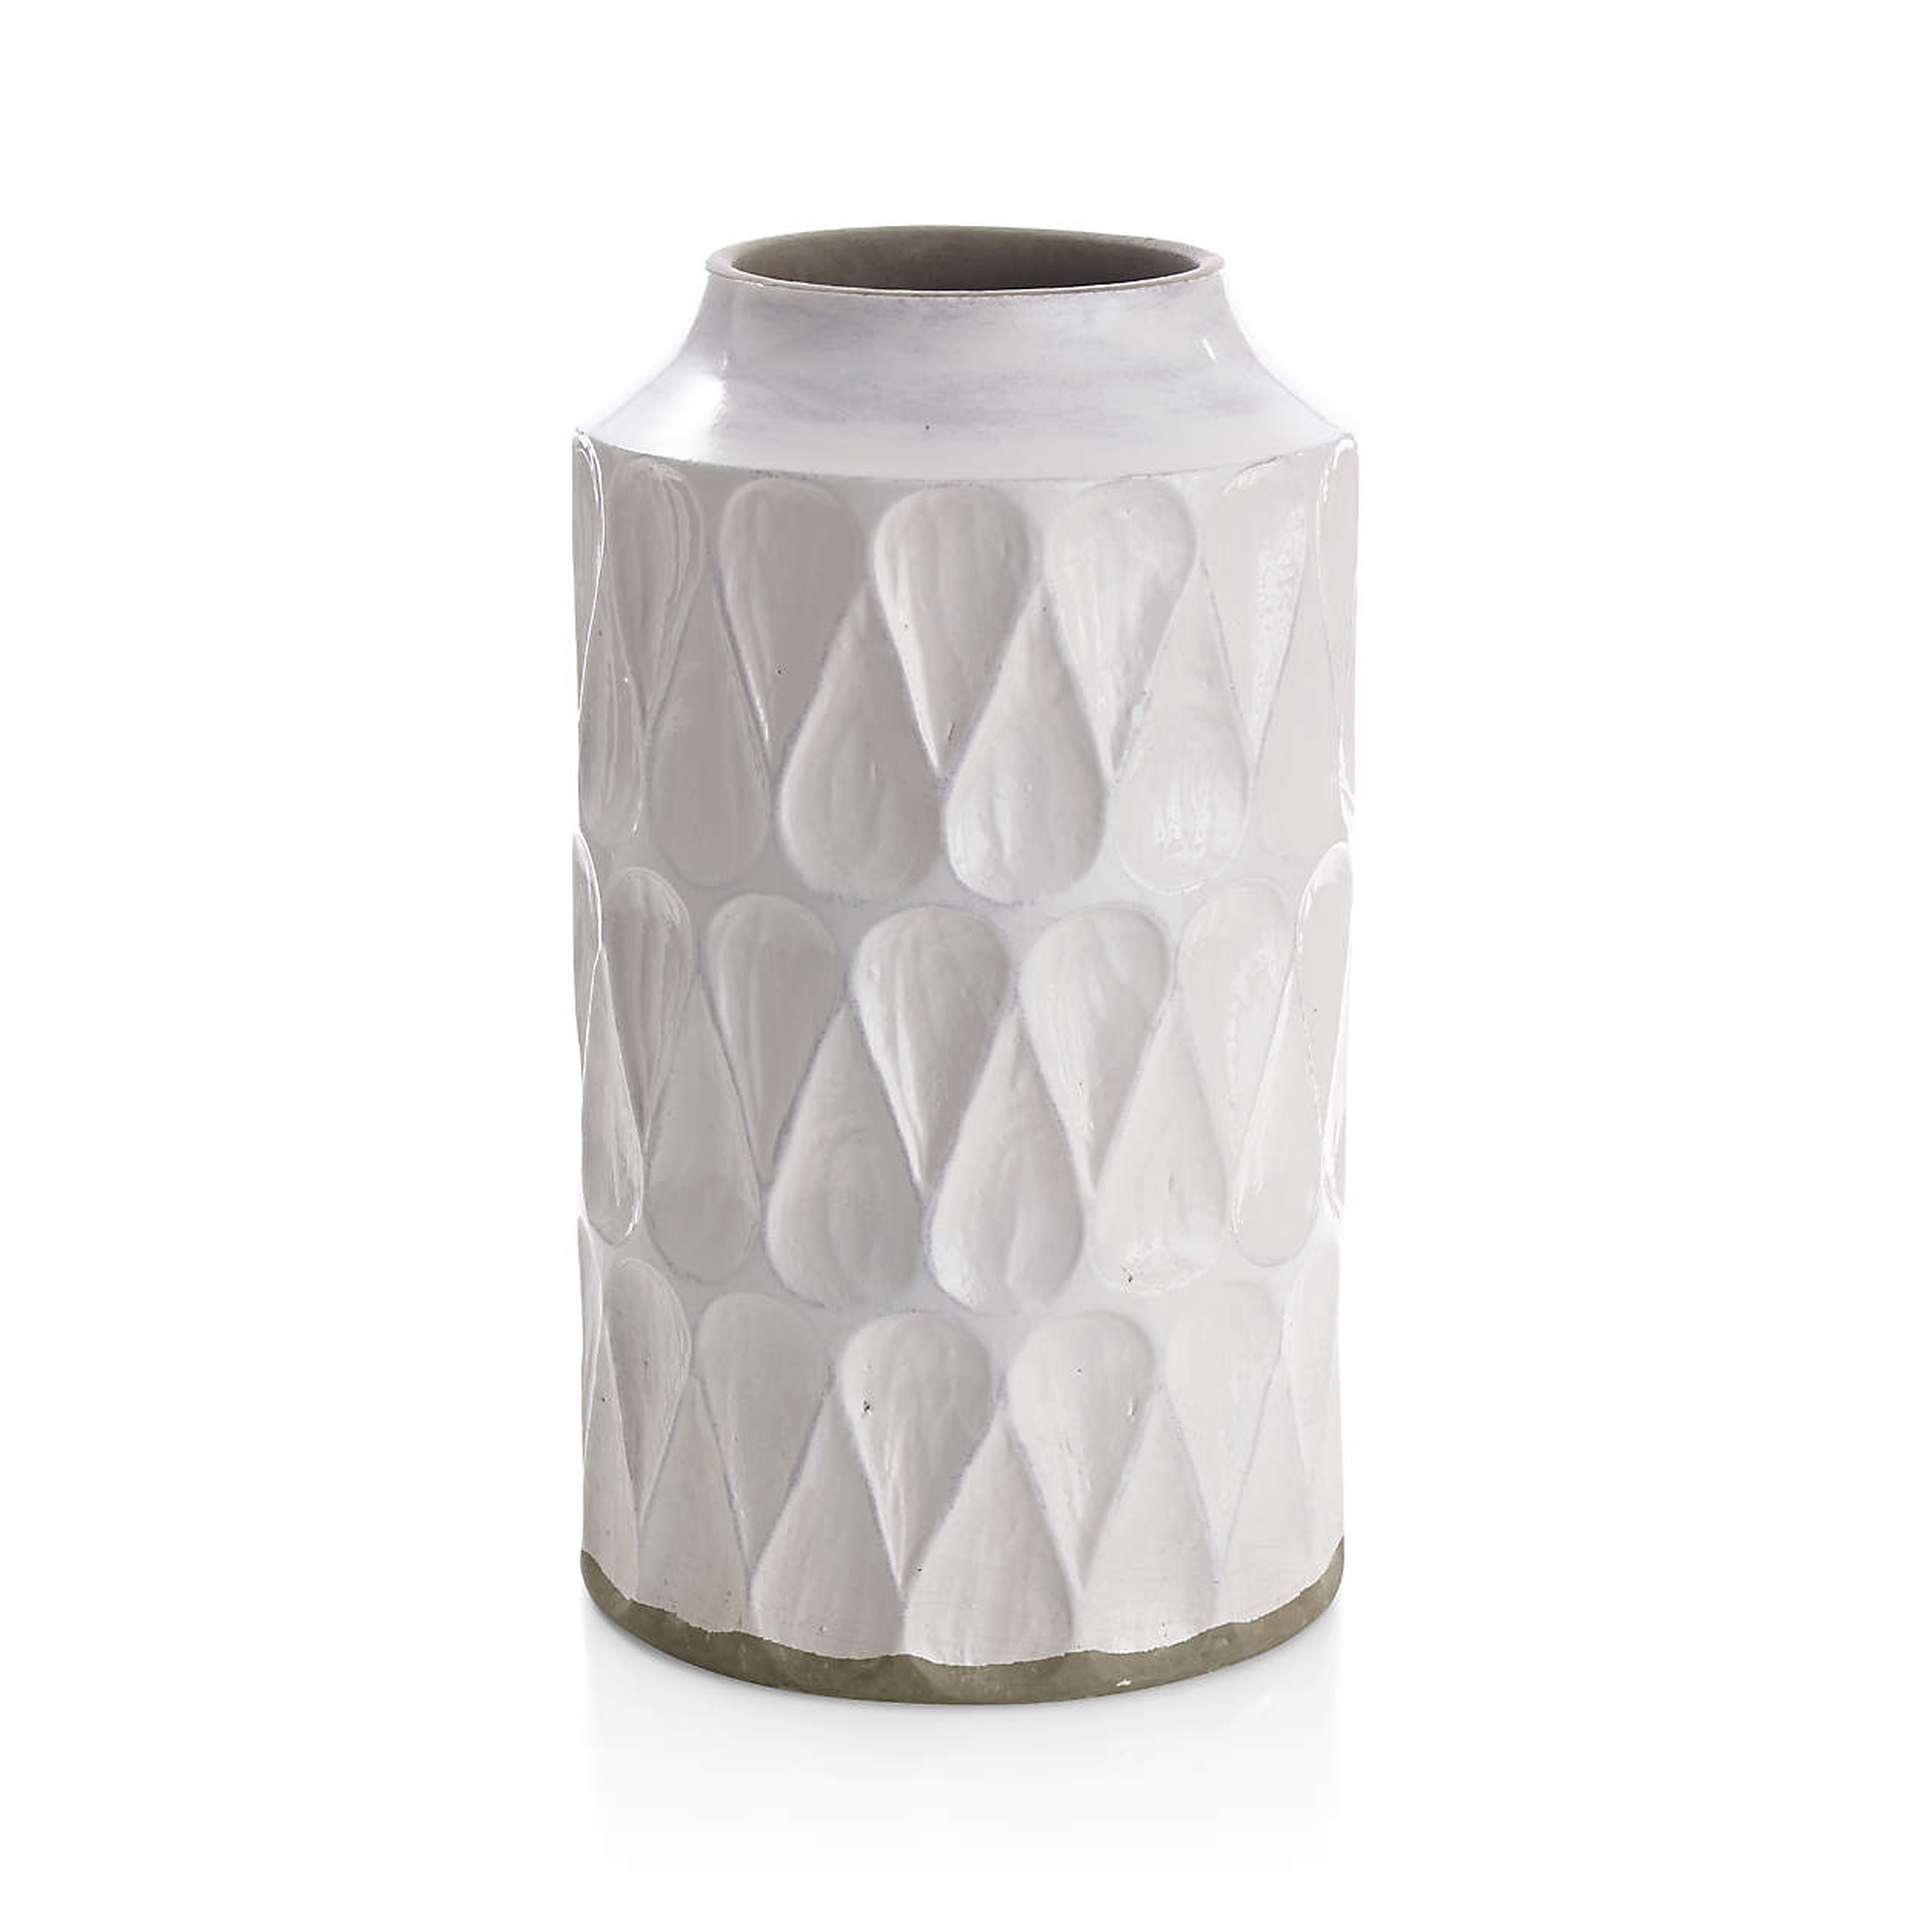 Kora Vase, Medium - Crate and Barrel